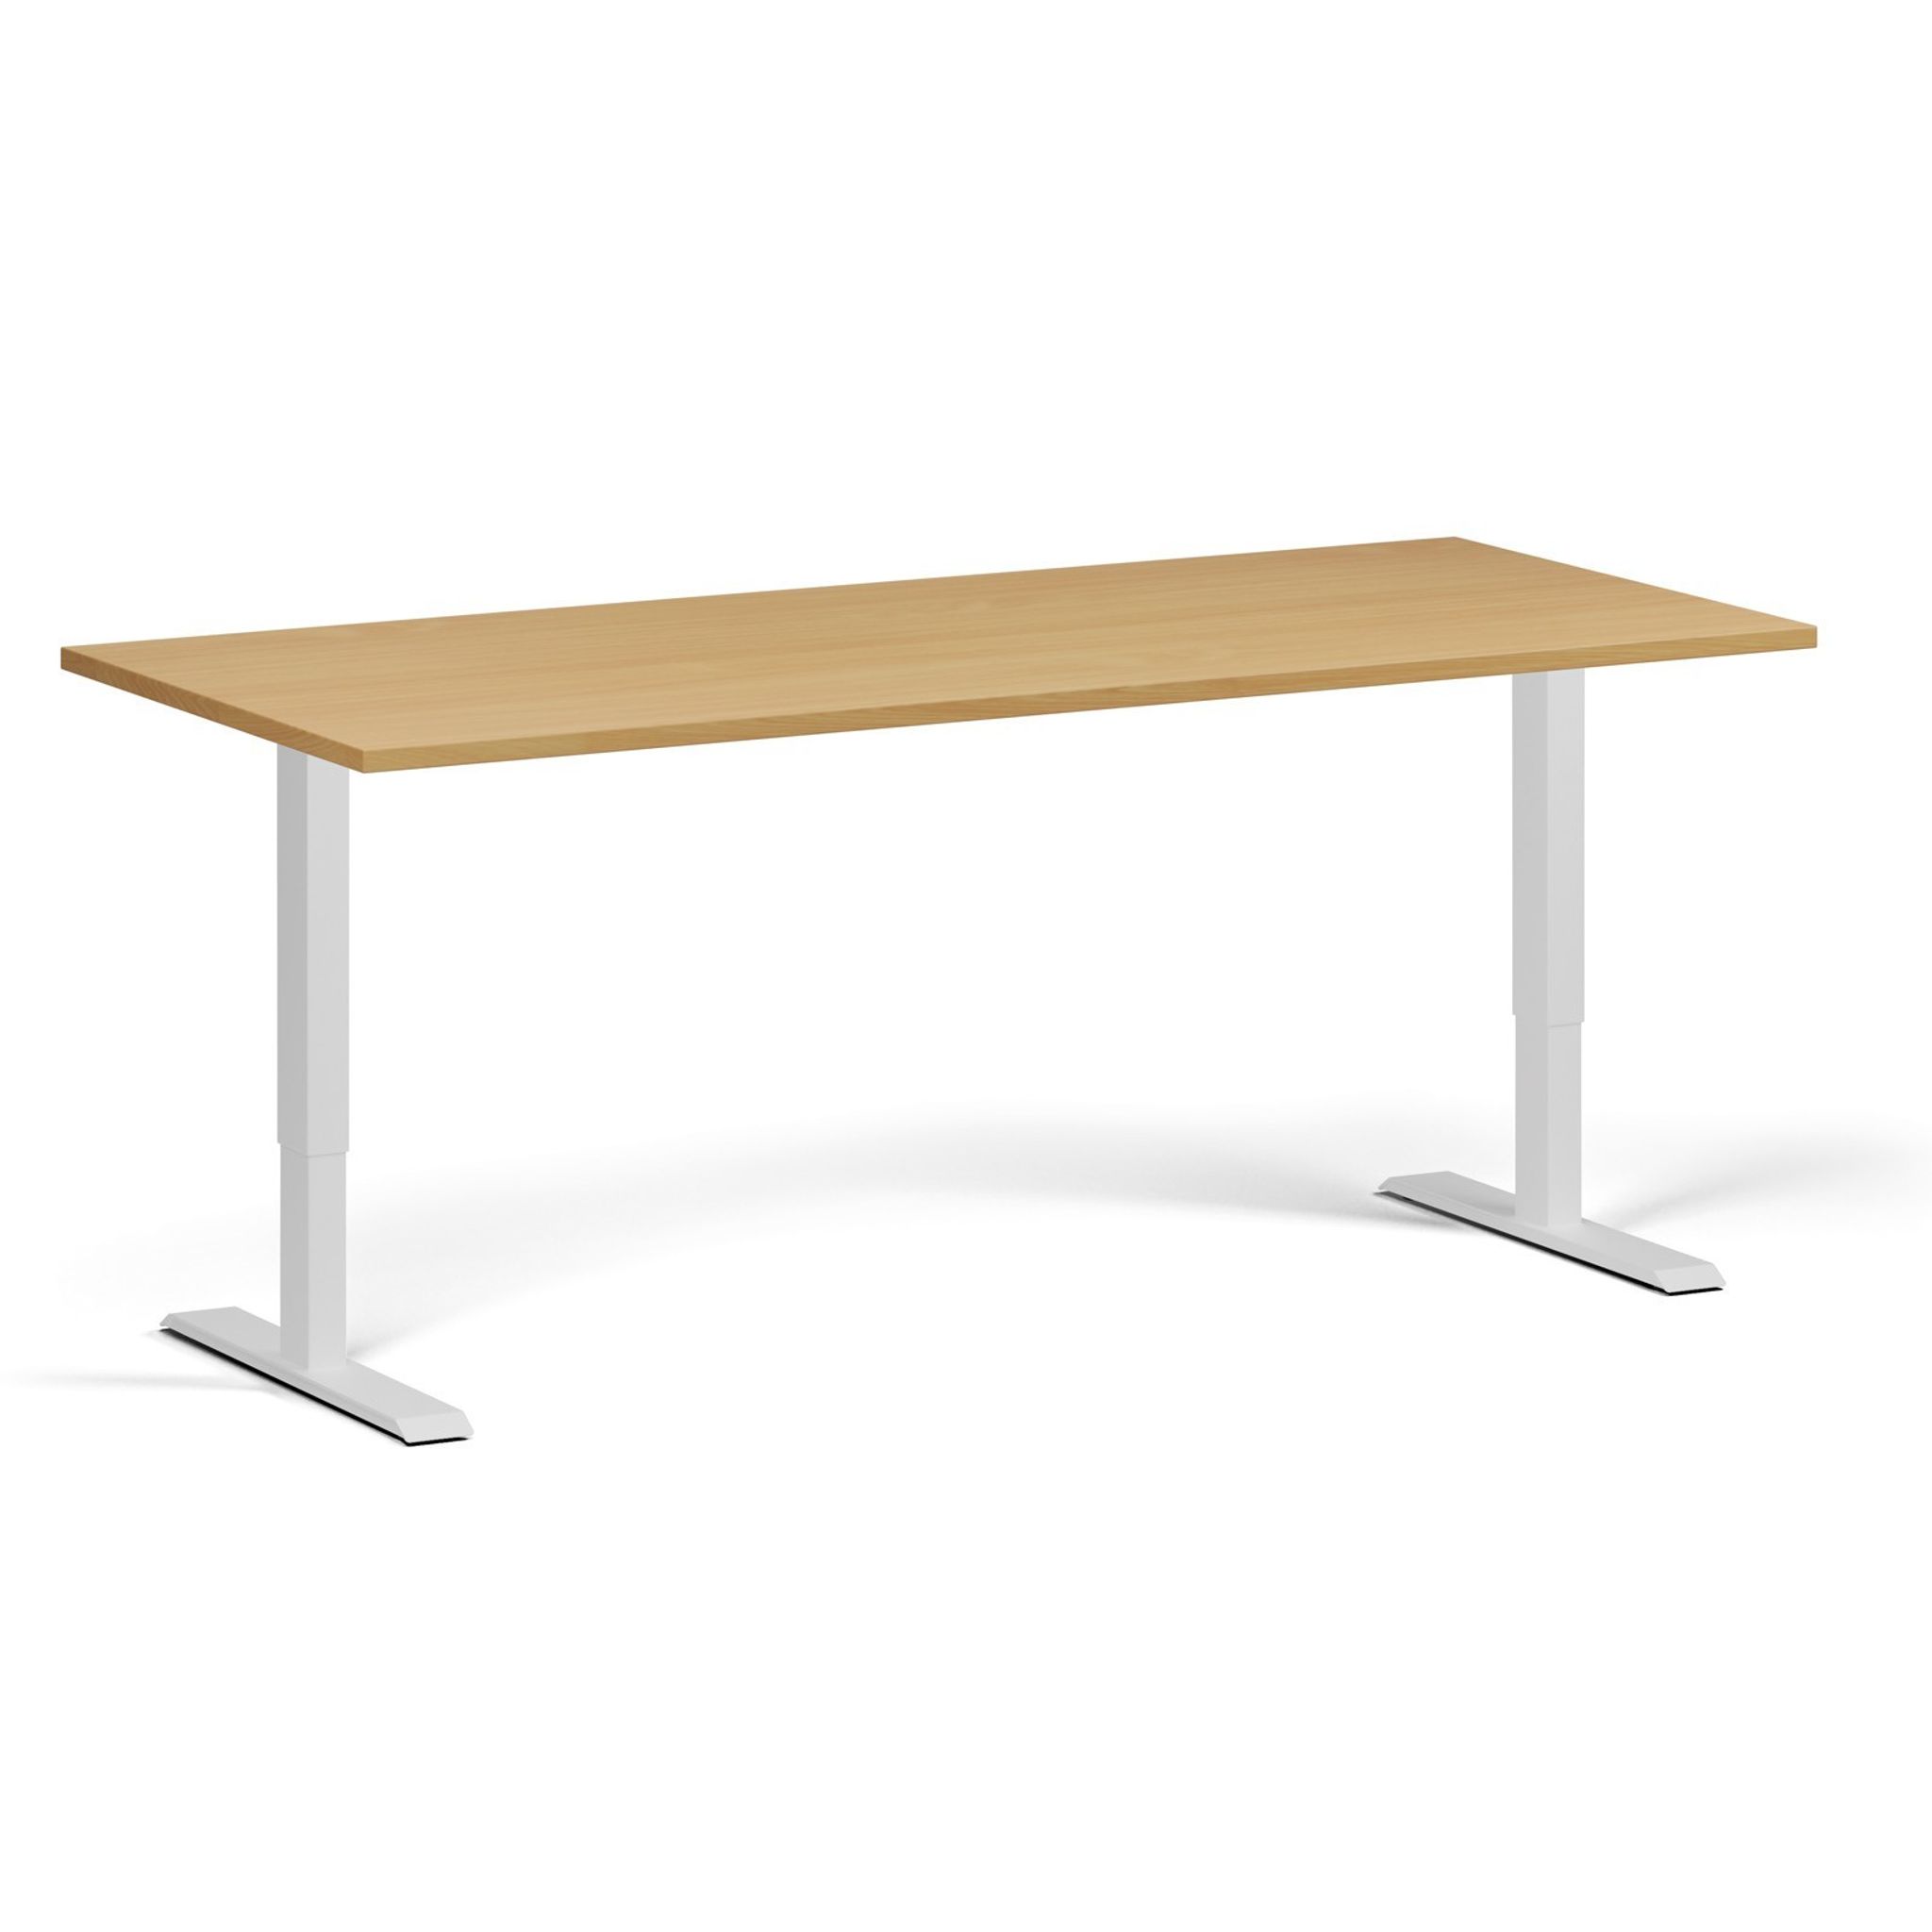 Výškově nastavitelný stůl, 1 motor, 745 - 1235 mm, deska 1800 x 800 mm, bílá podnož, buk